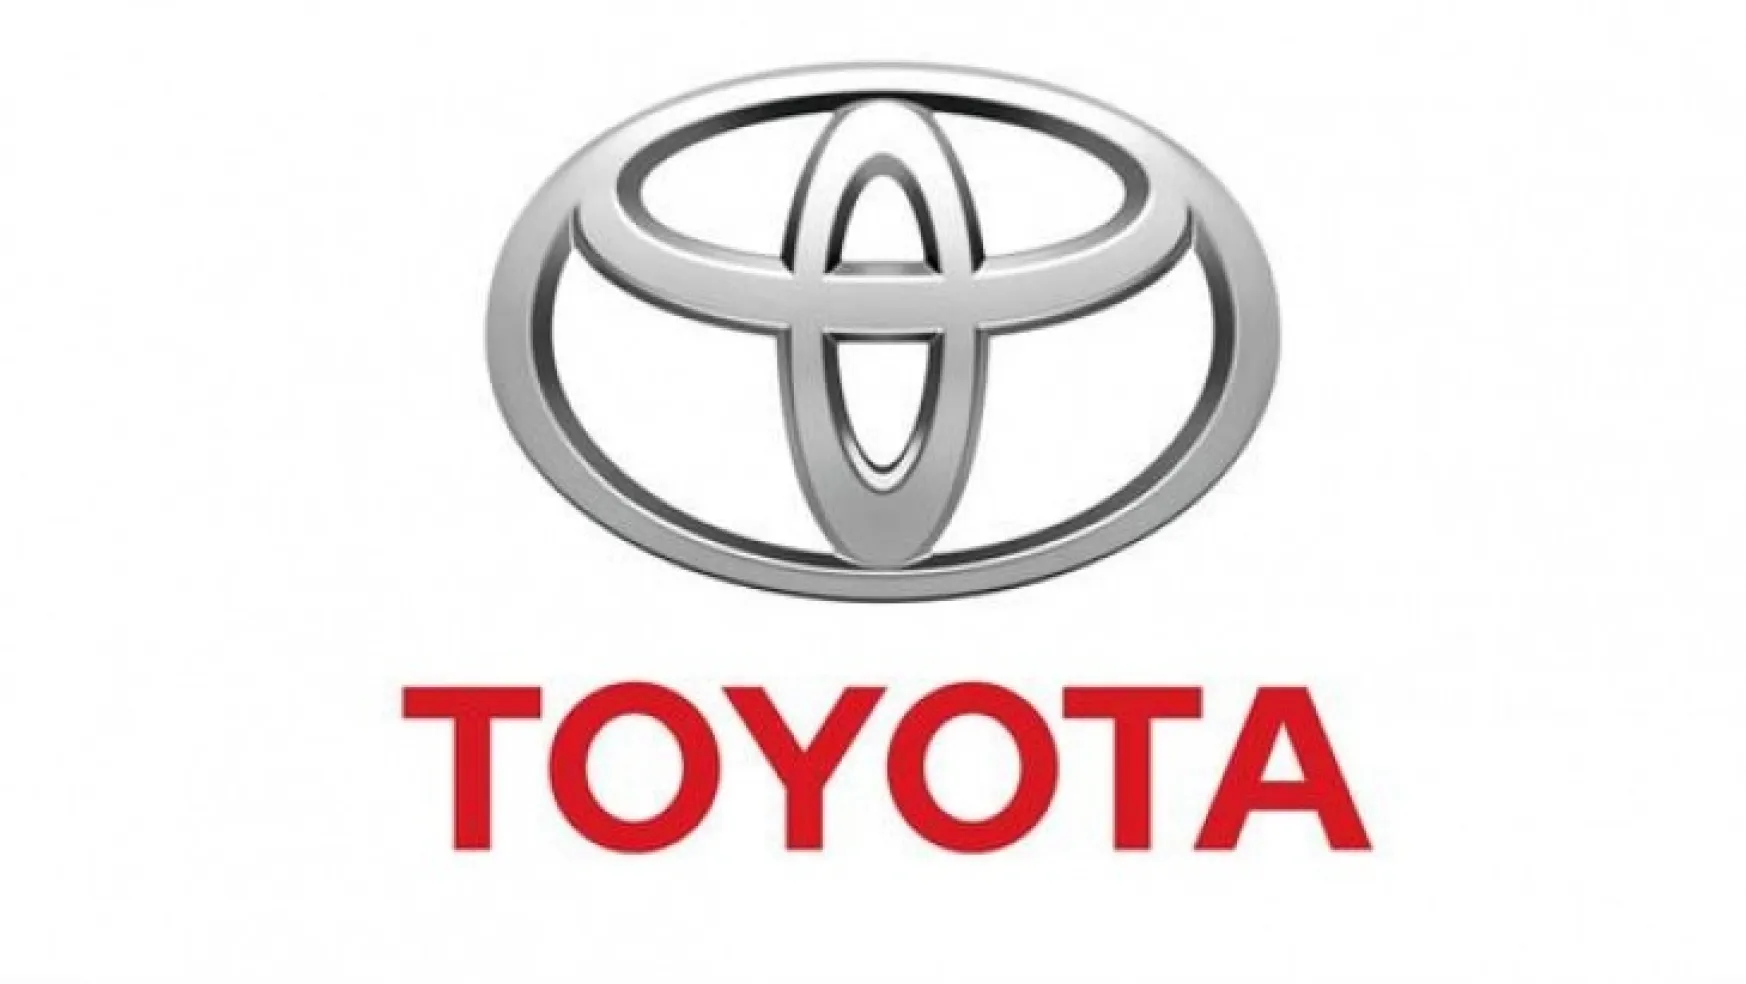 Toyota üretimini azaltacak